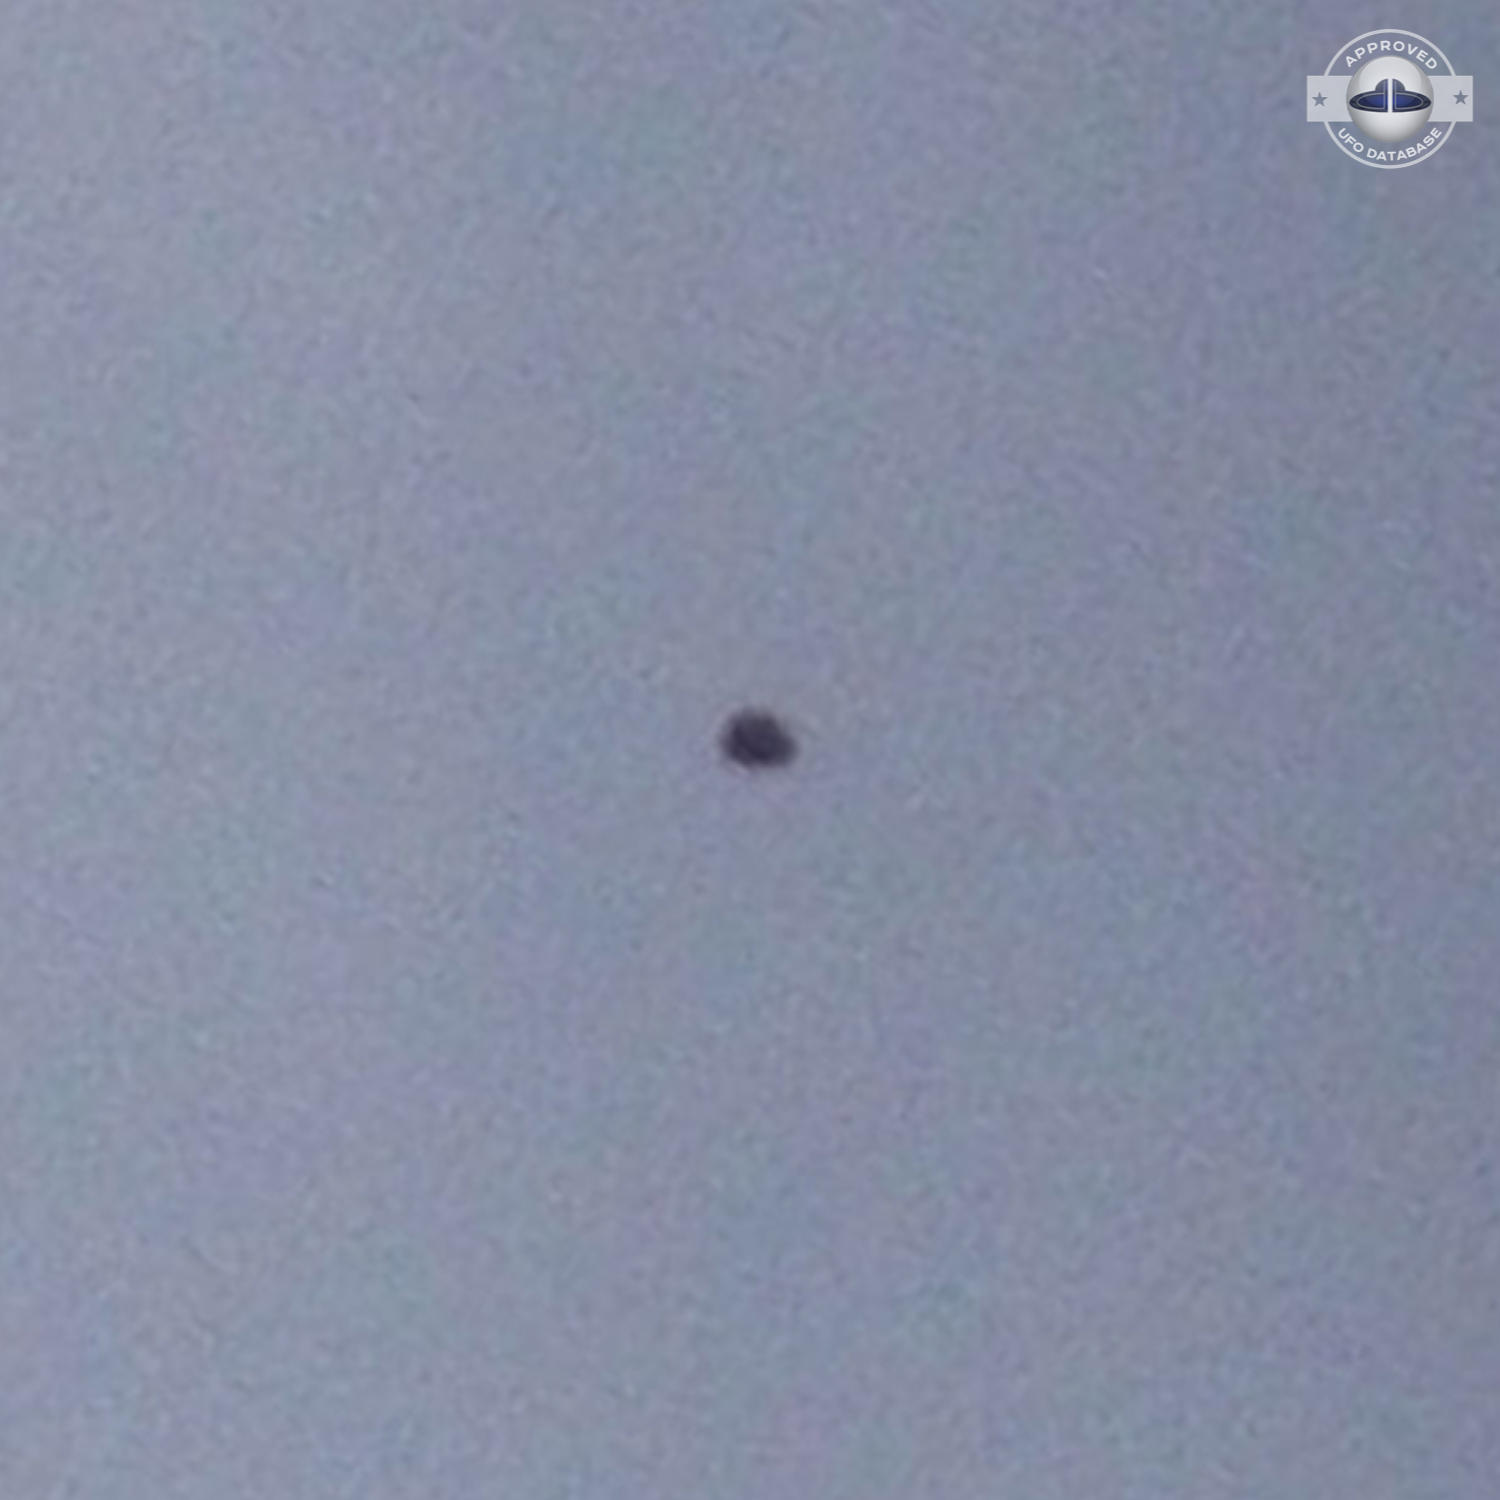 Dark UFO hovering over Rishon LeZion in Center Israel - 2012 UFO Picture #424-2